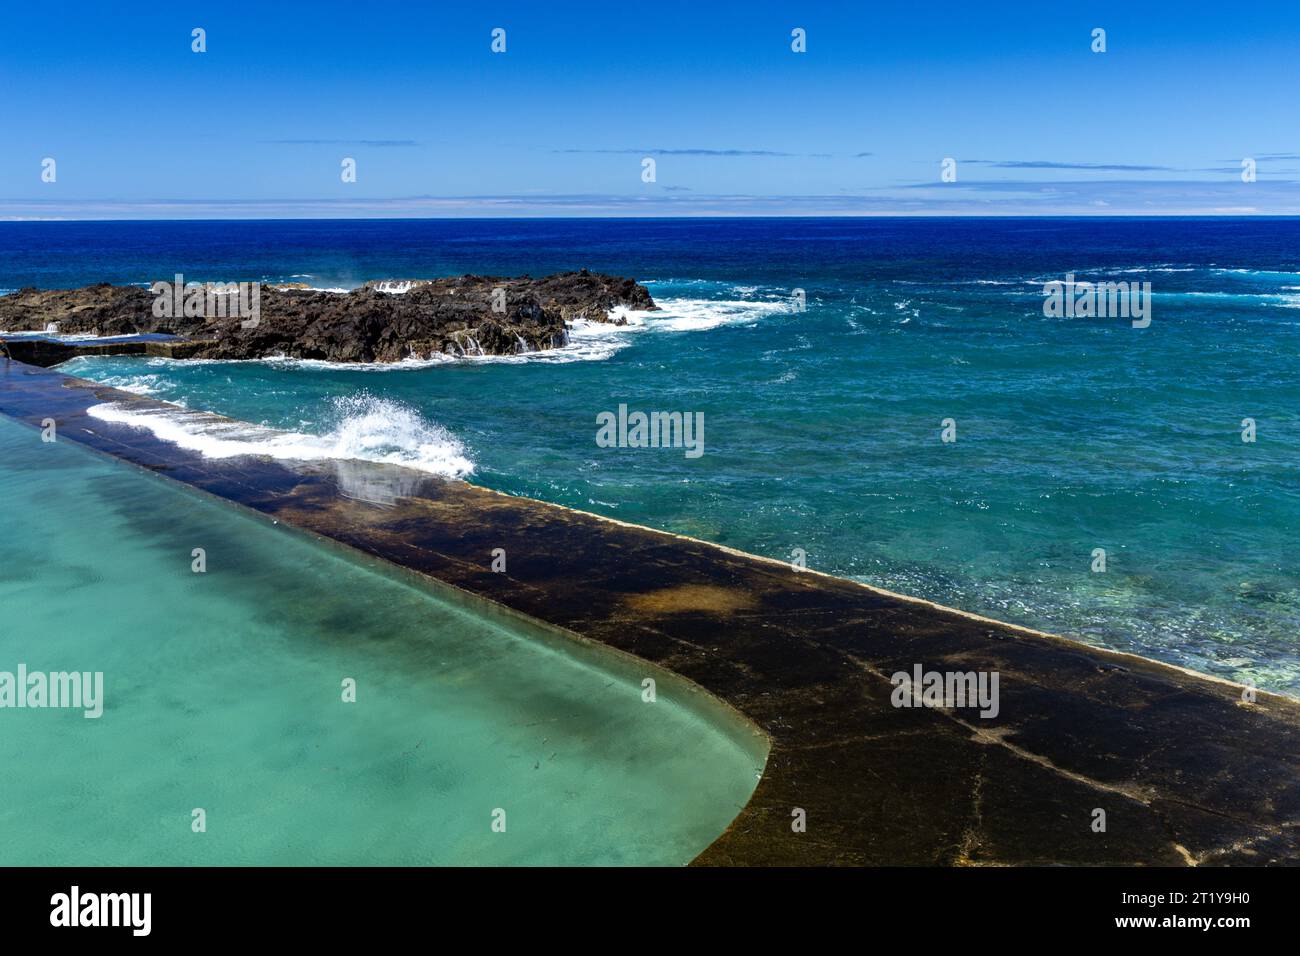 Ein natürliches Schwimmbad mit Wasser aus dem Atlantik, Piscina Natural Spain Teneriffa Stockfoto